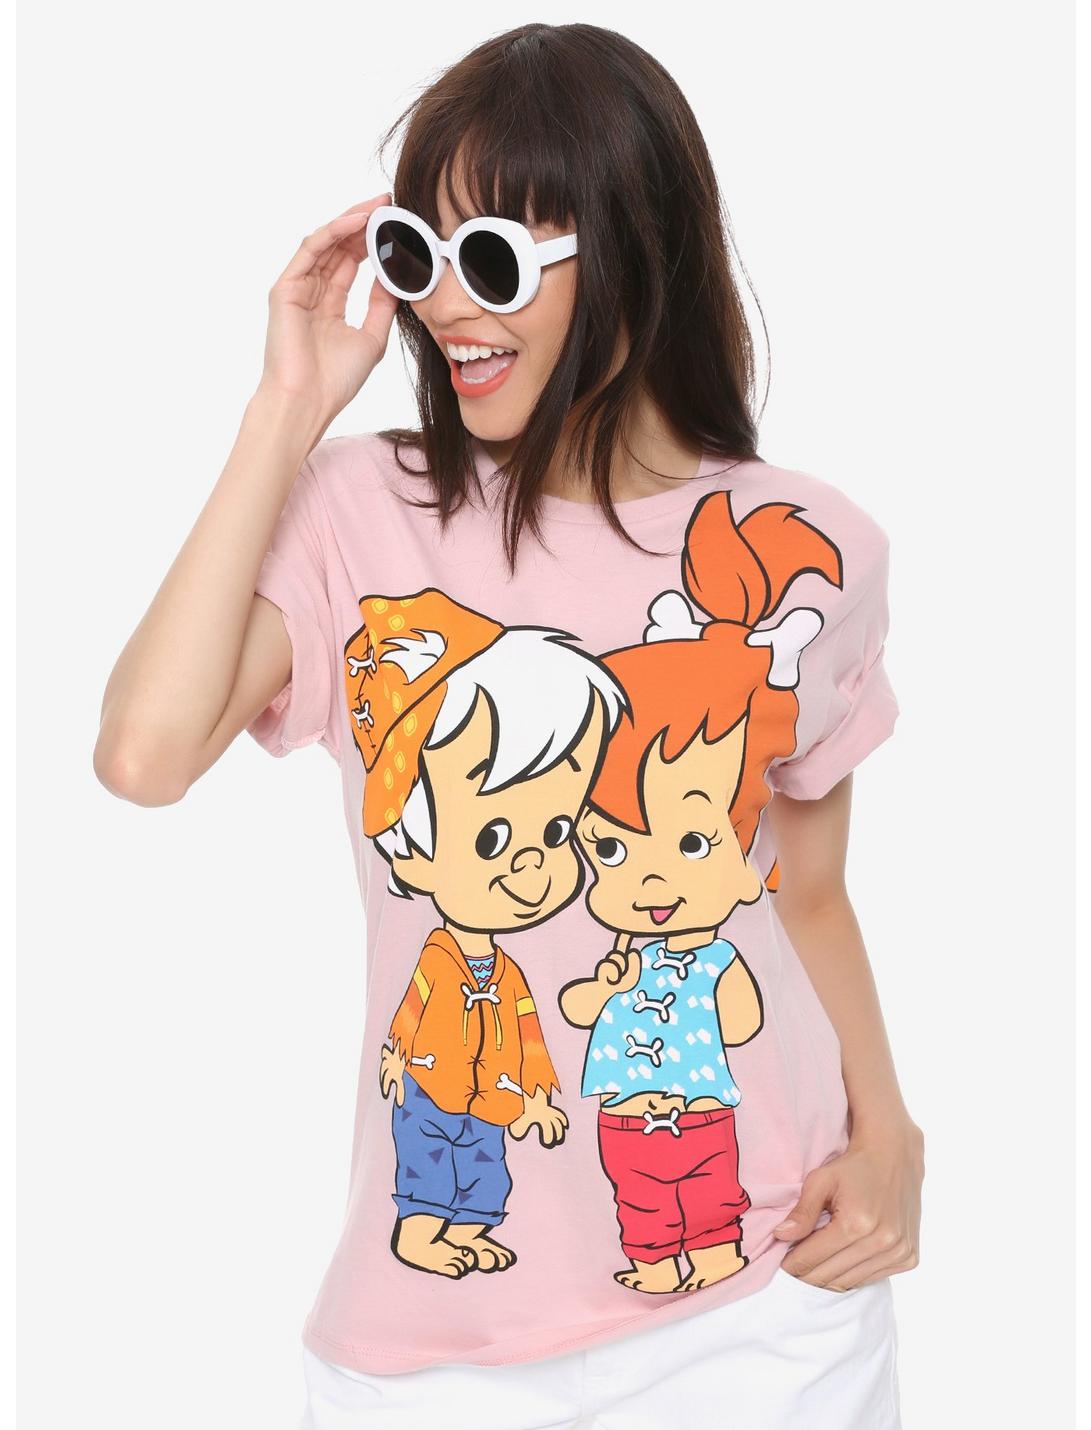 The Flintstones Pebbles & Bamm-Bamm Girls T-Shirt, PINK, hi-res